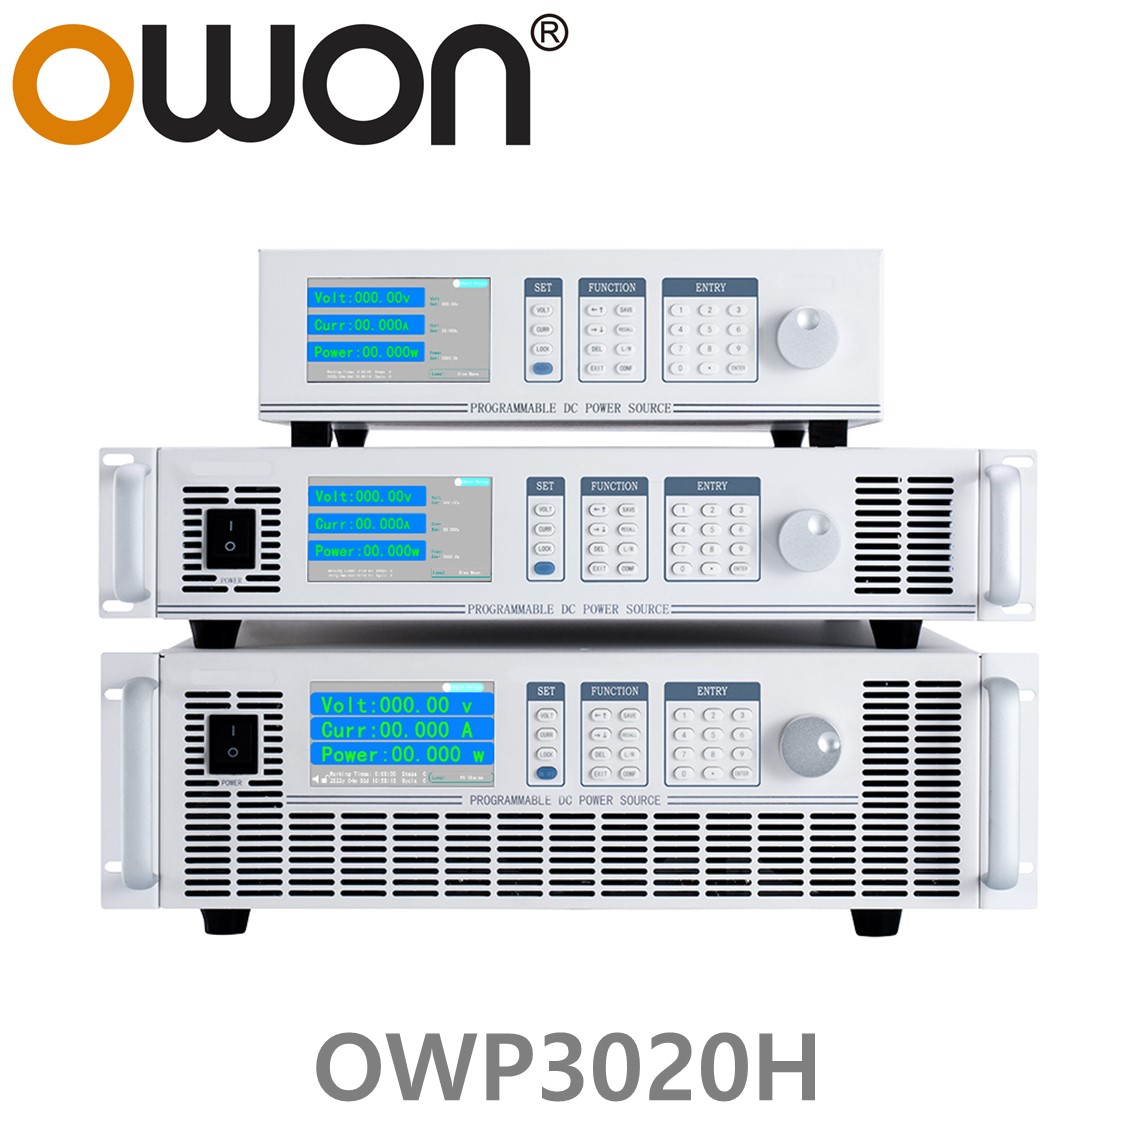 [ OWON ] OWP3020H 고전력 DC파워서플라이, 0-200.00V / 0-23.000A / 3000.0W DC전원공급장치